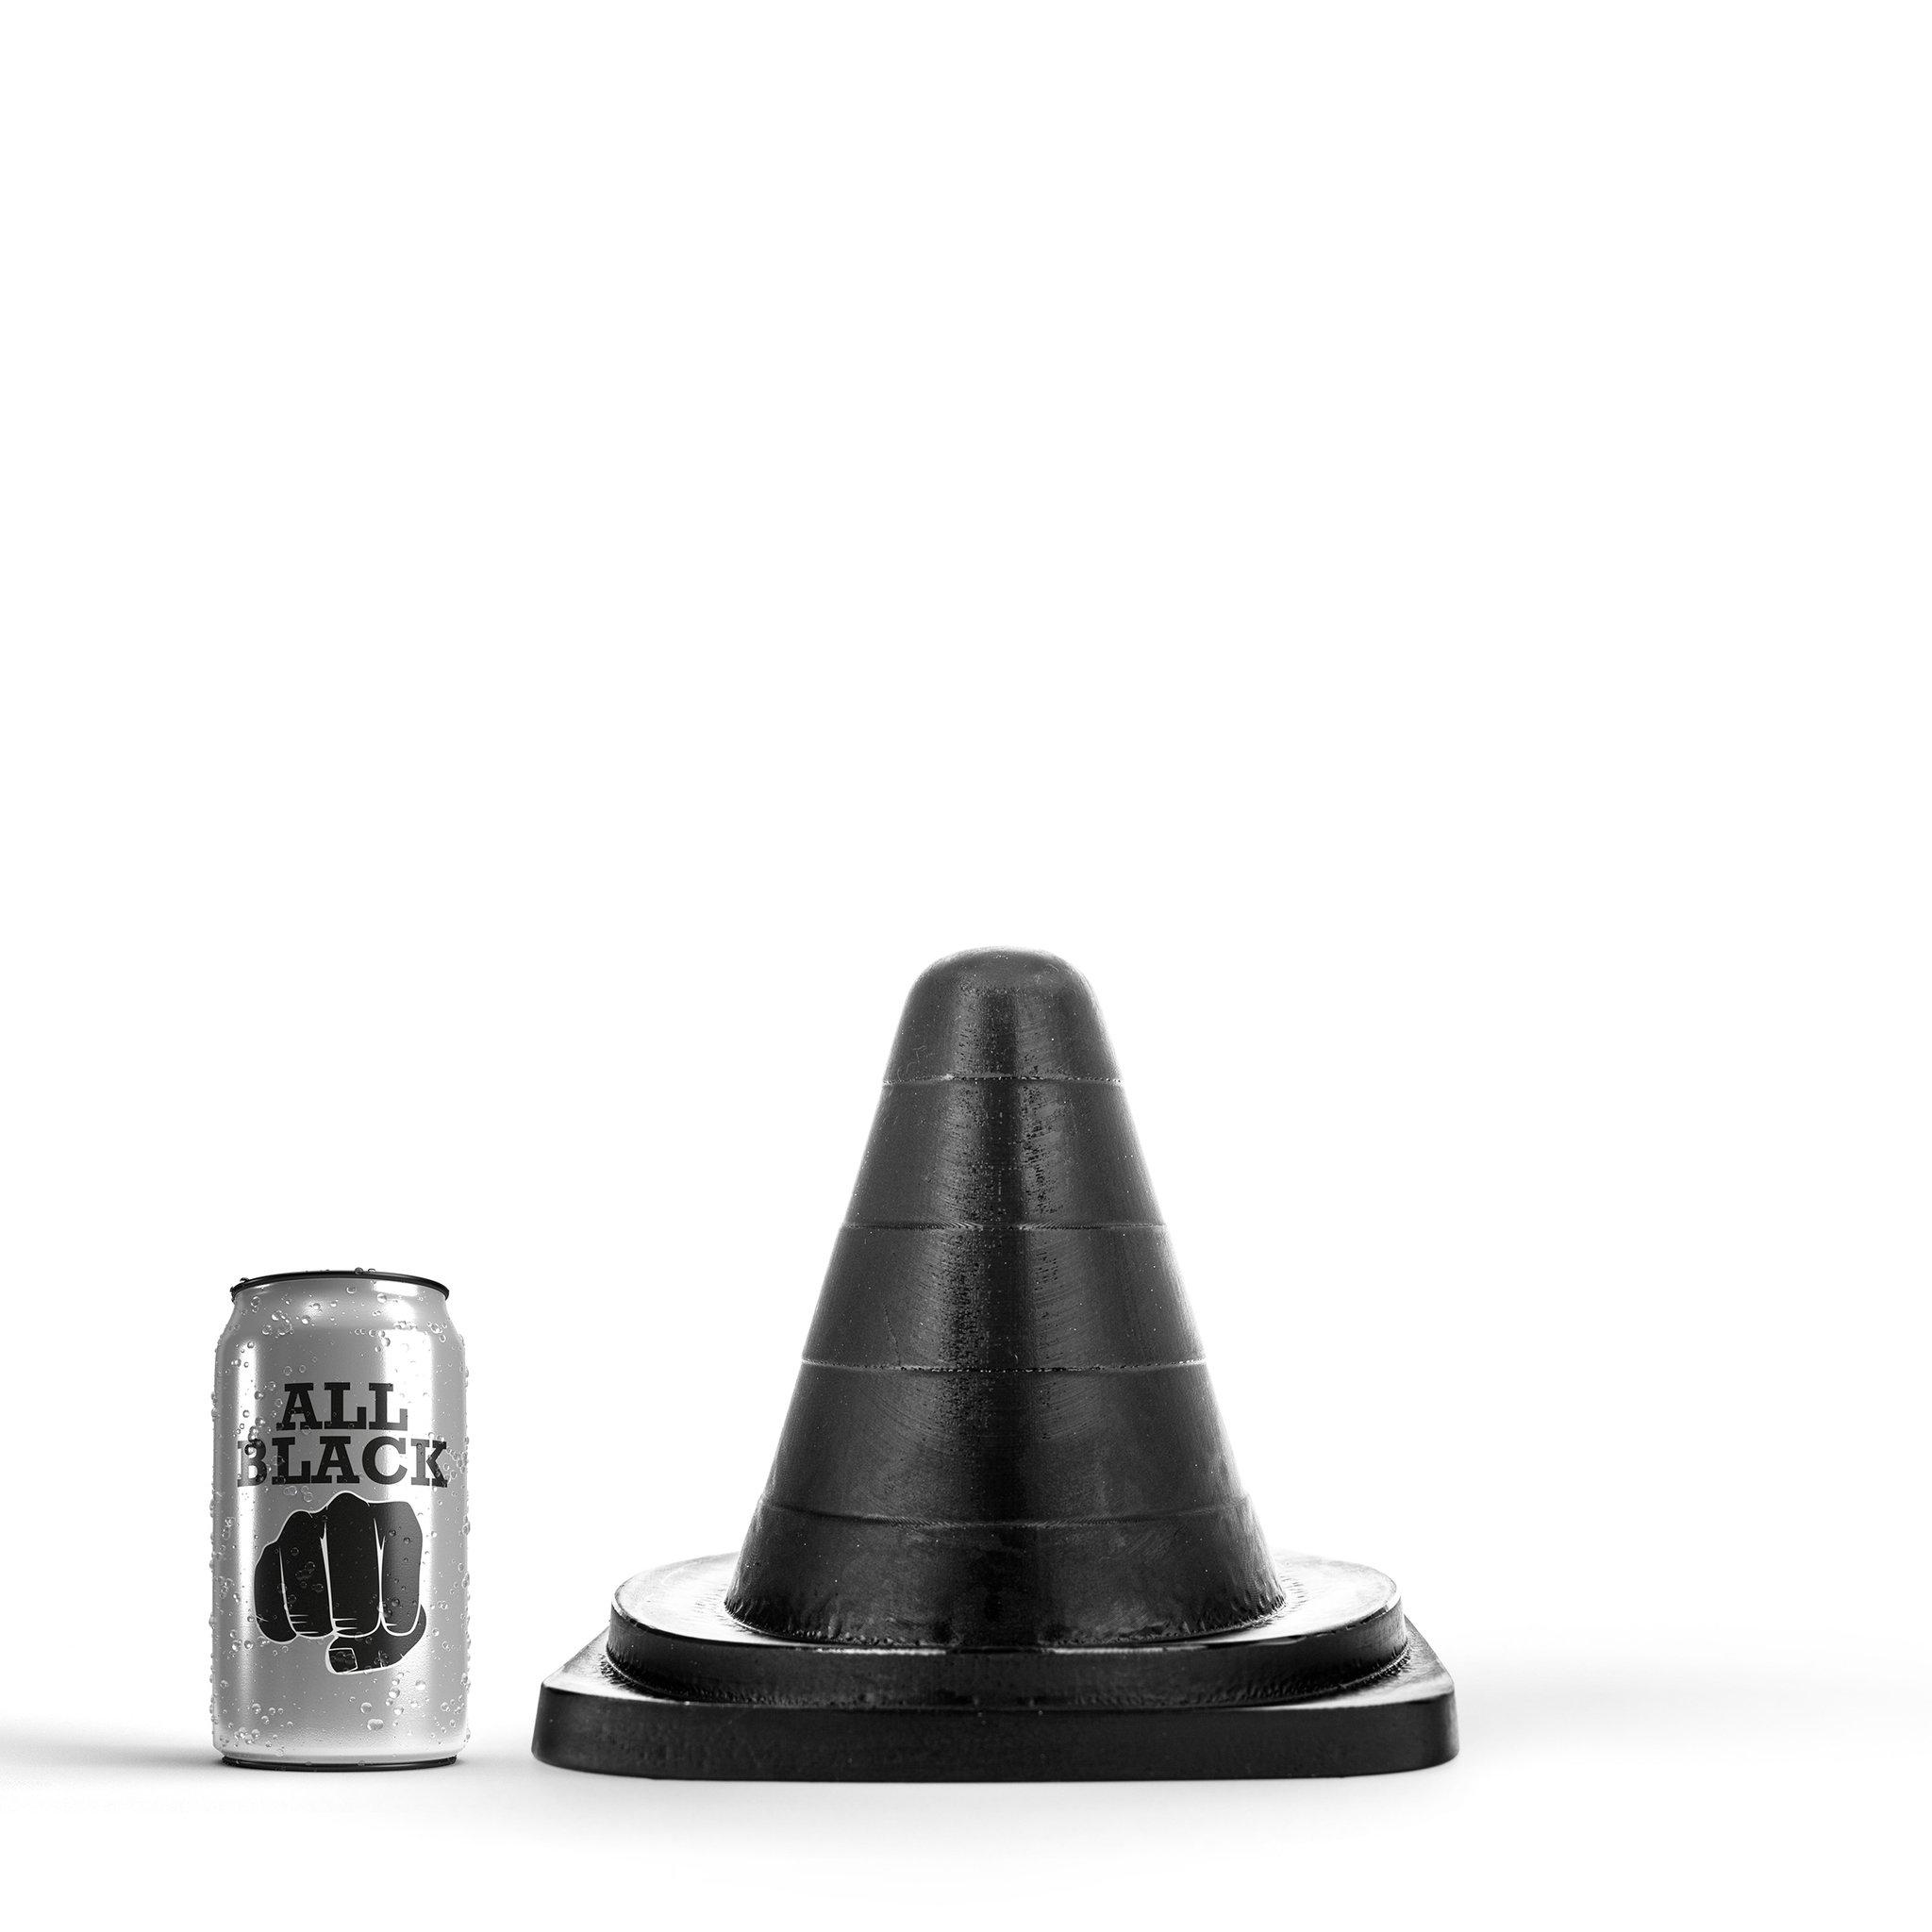 All Black Butt Plug Small Cone, 20 cm